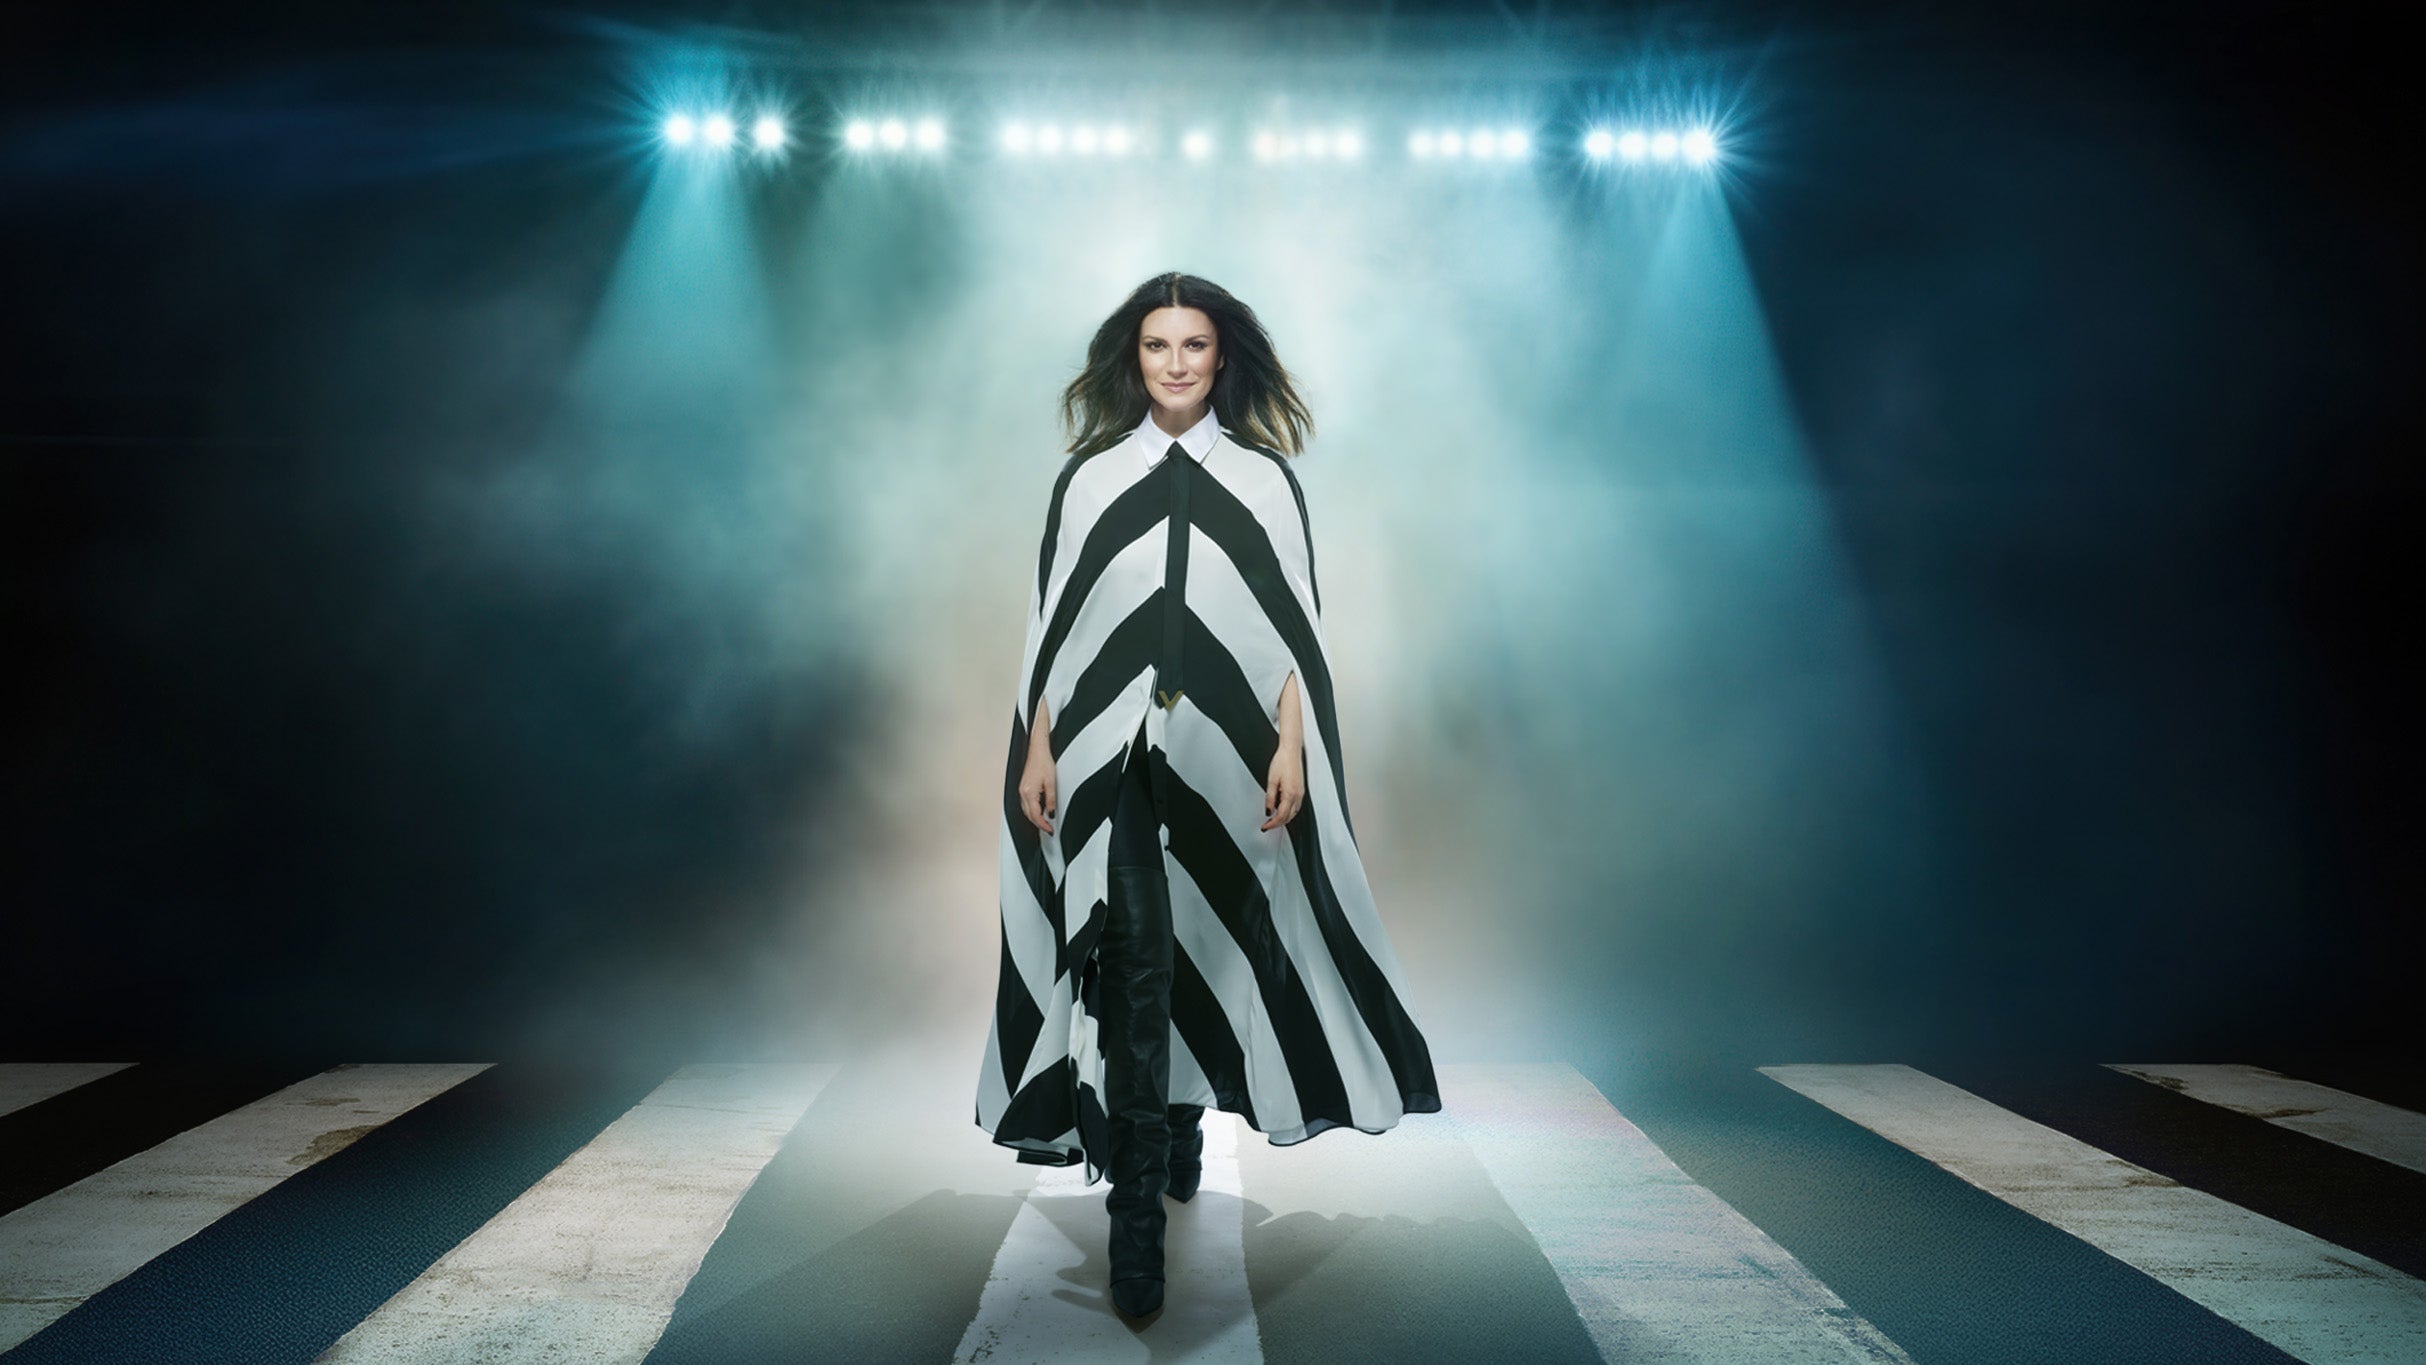 Laura Pausini World Tour 2023/2024 in Miami promo photo for Fan Club presale offer code